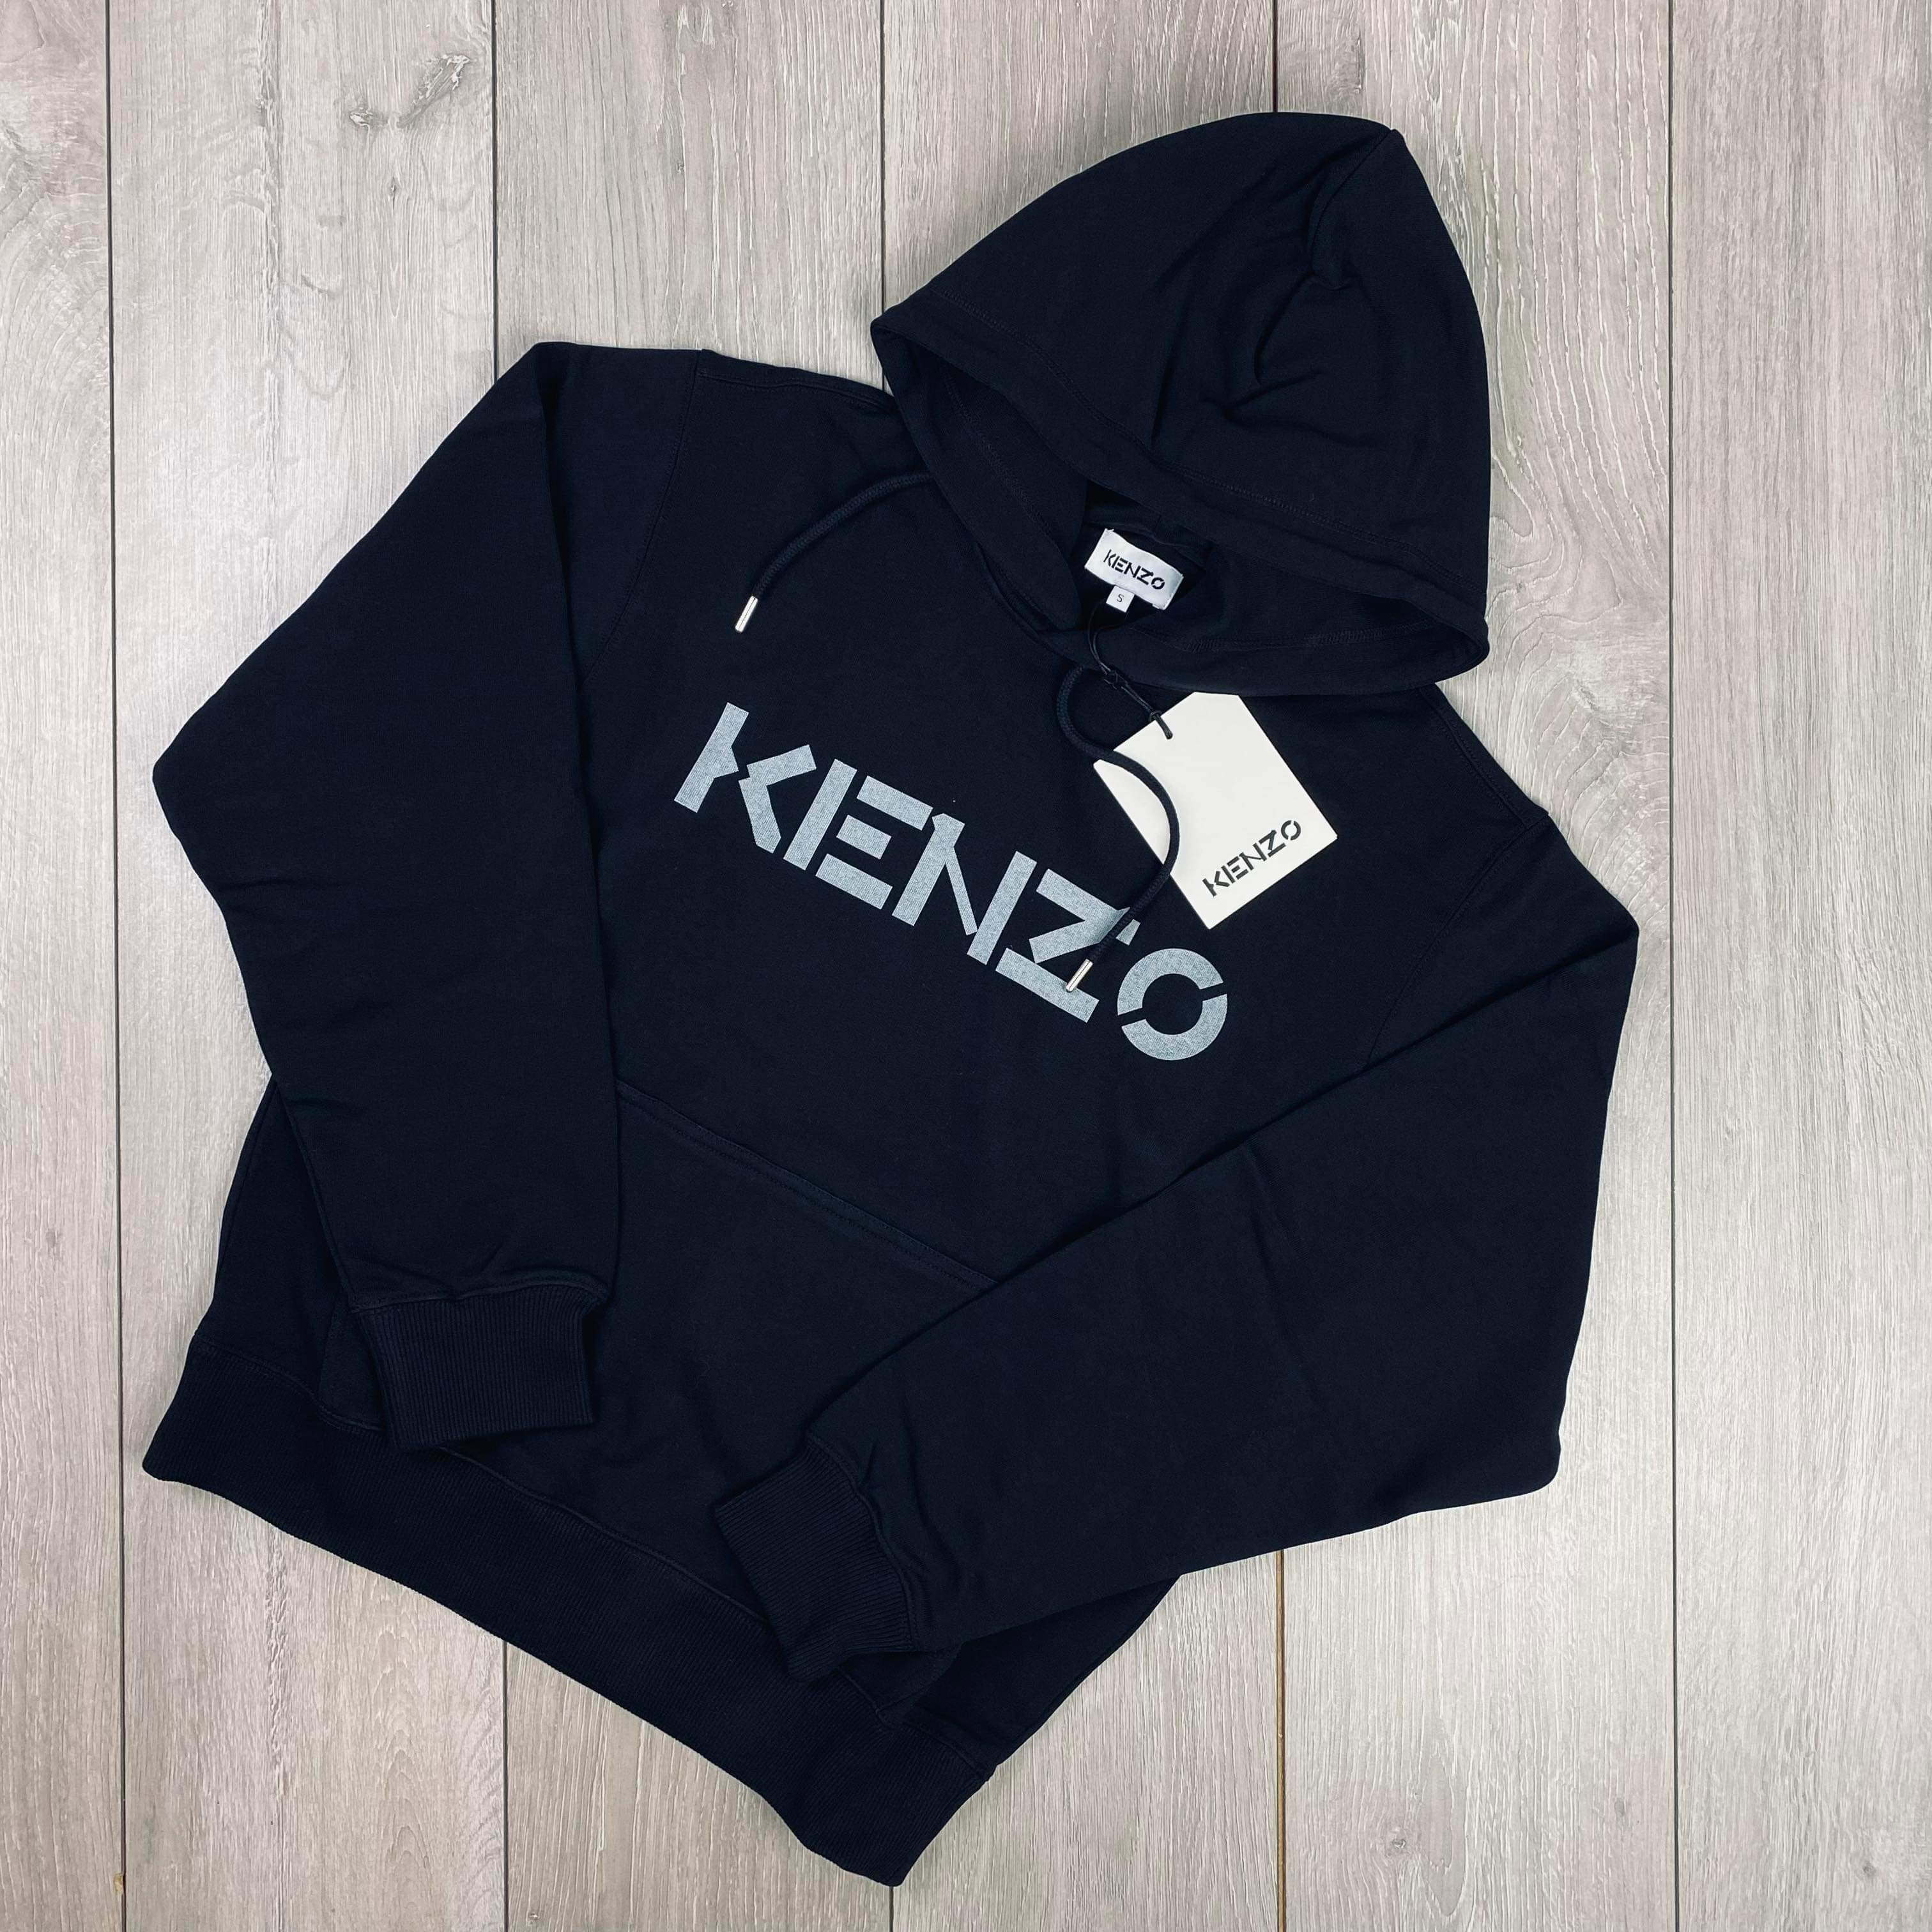 Kenzo Printed Hoodie